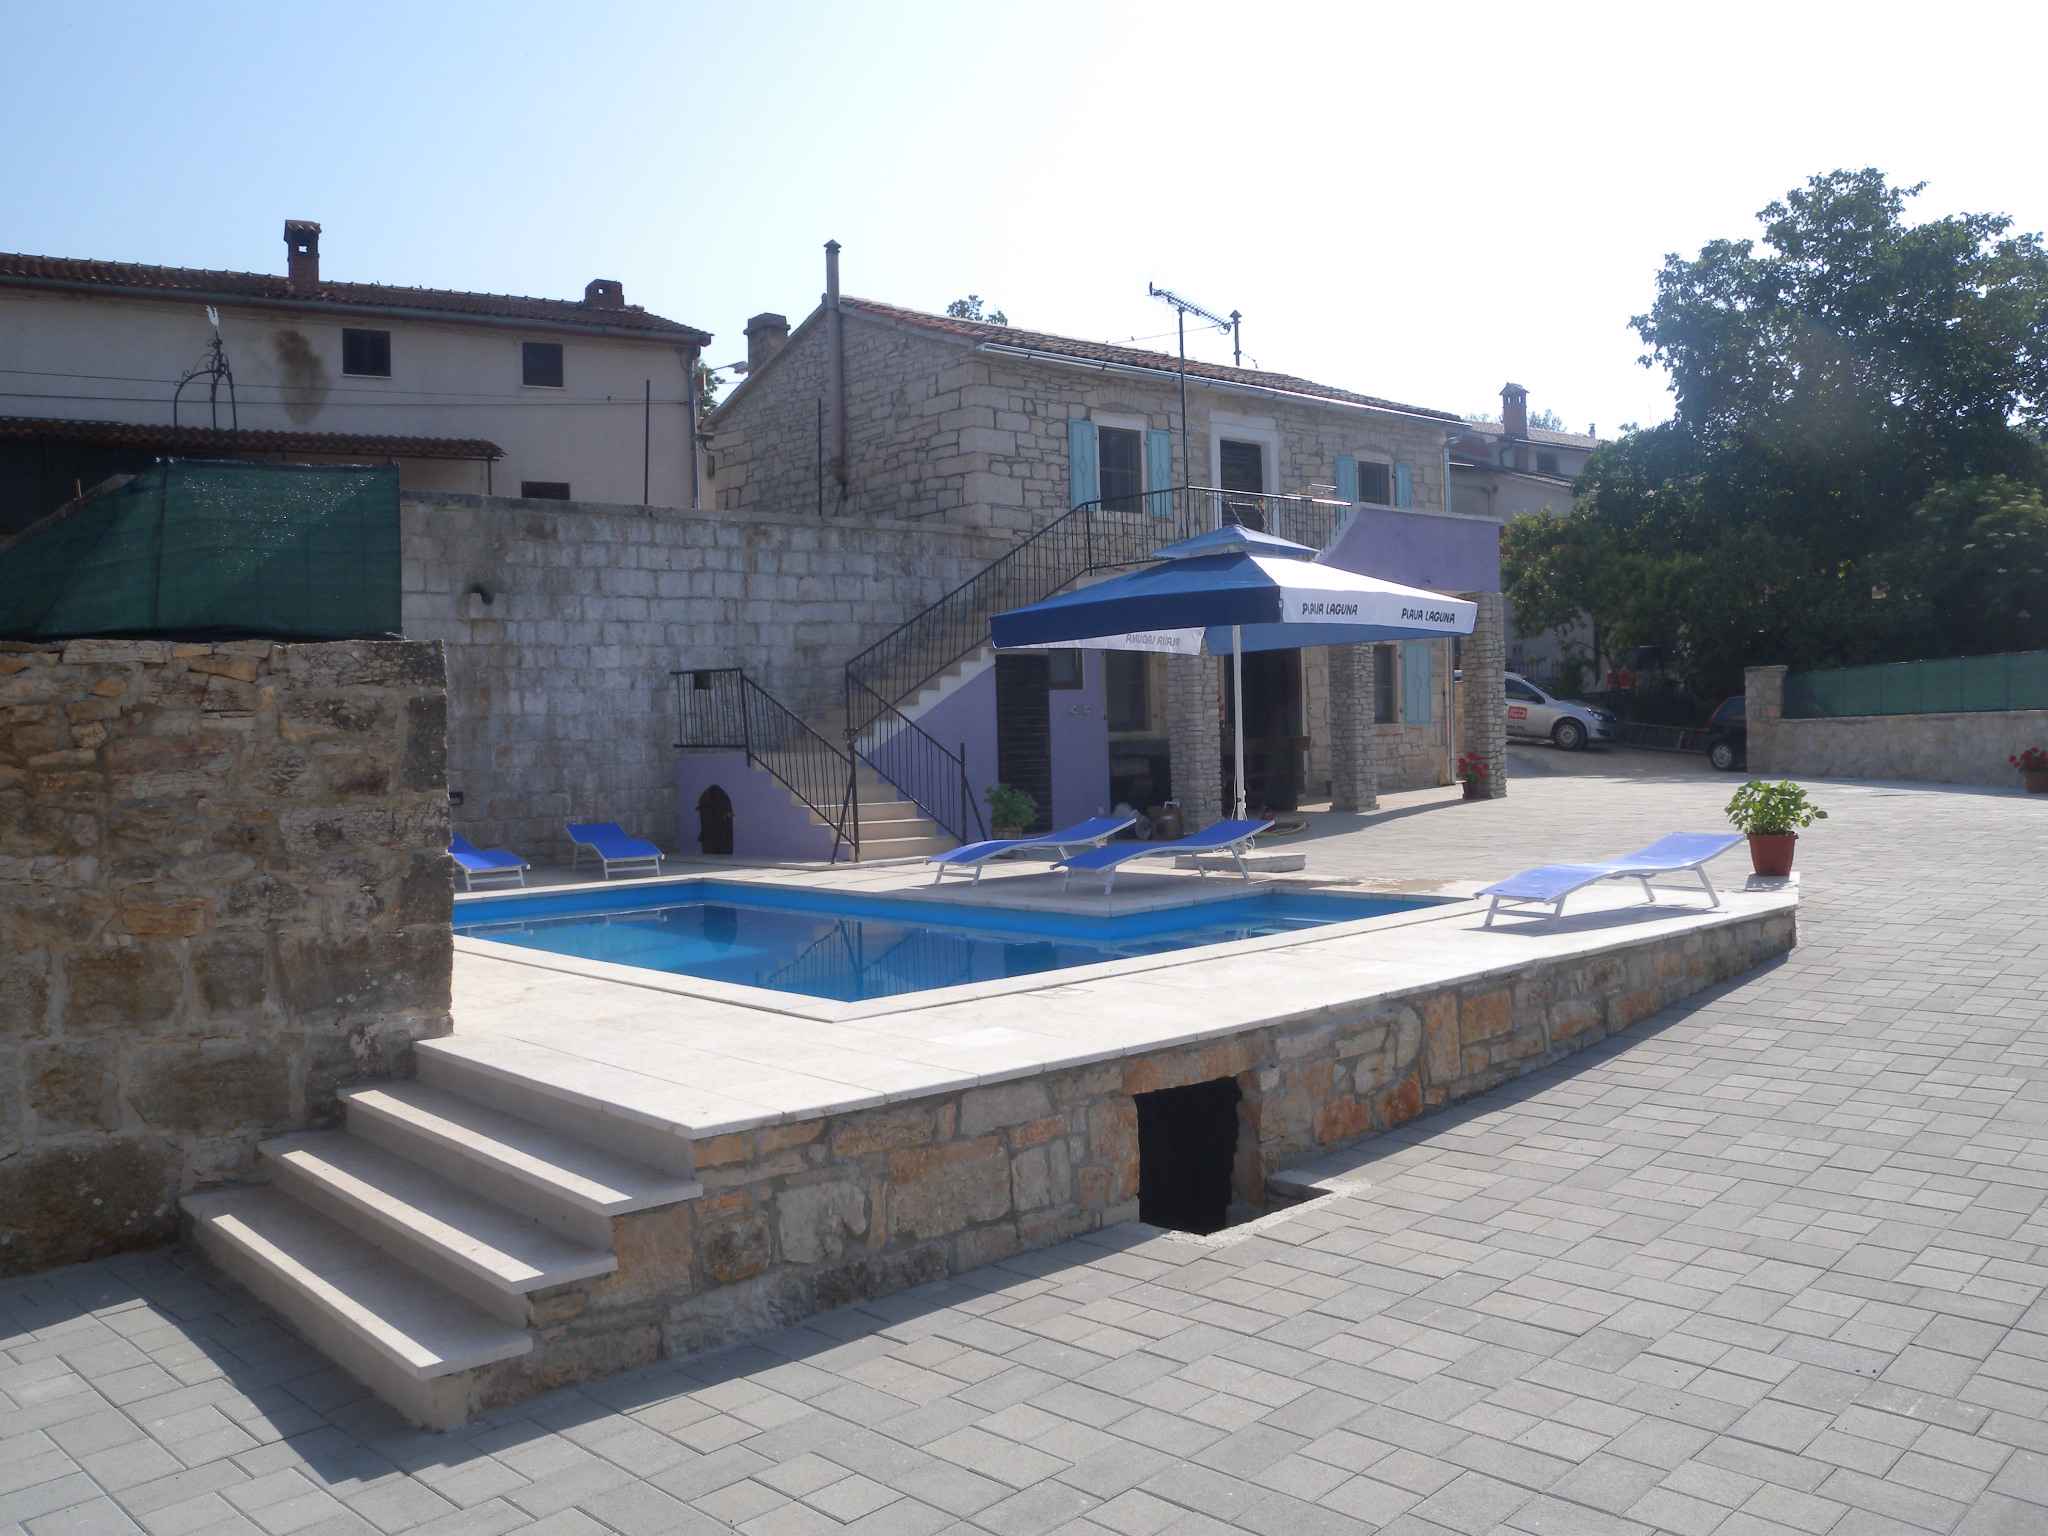 Ferienhaus mit Pool in typischen istrischen Dorf Ferienhaus in Istrien